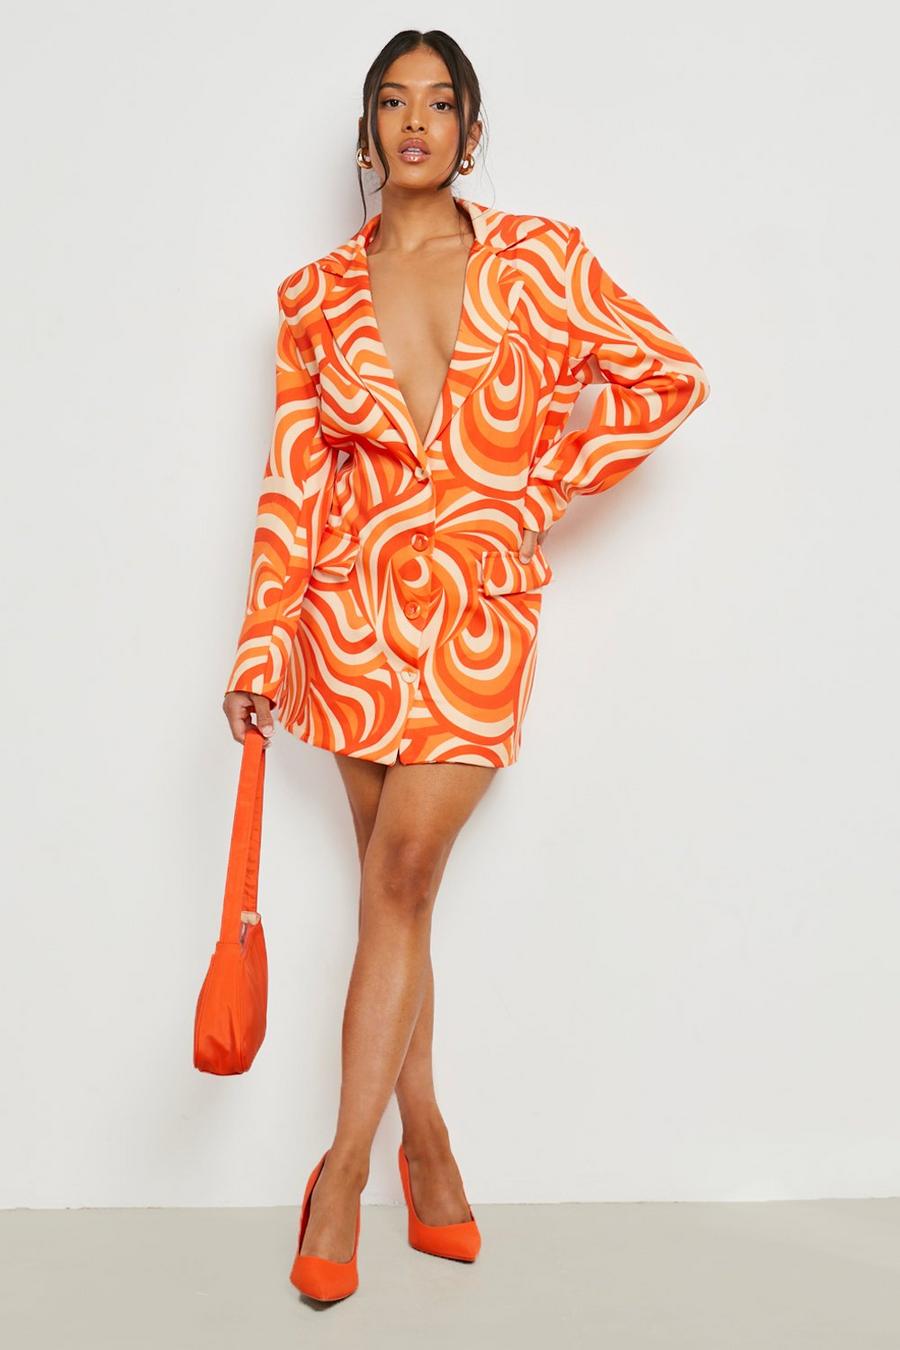 כתום arancio שמלת בלייזר אוברסייז פטיט עם הדפס אבסטרקטי